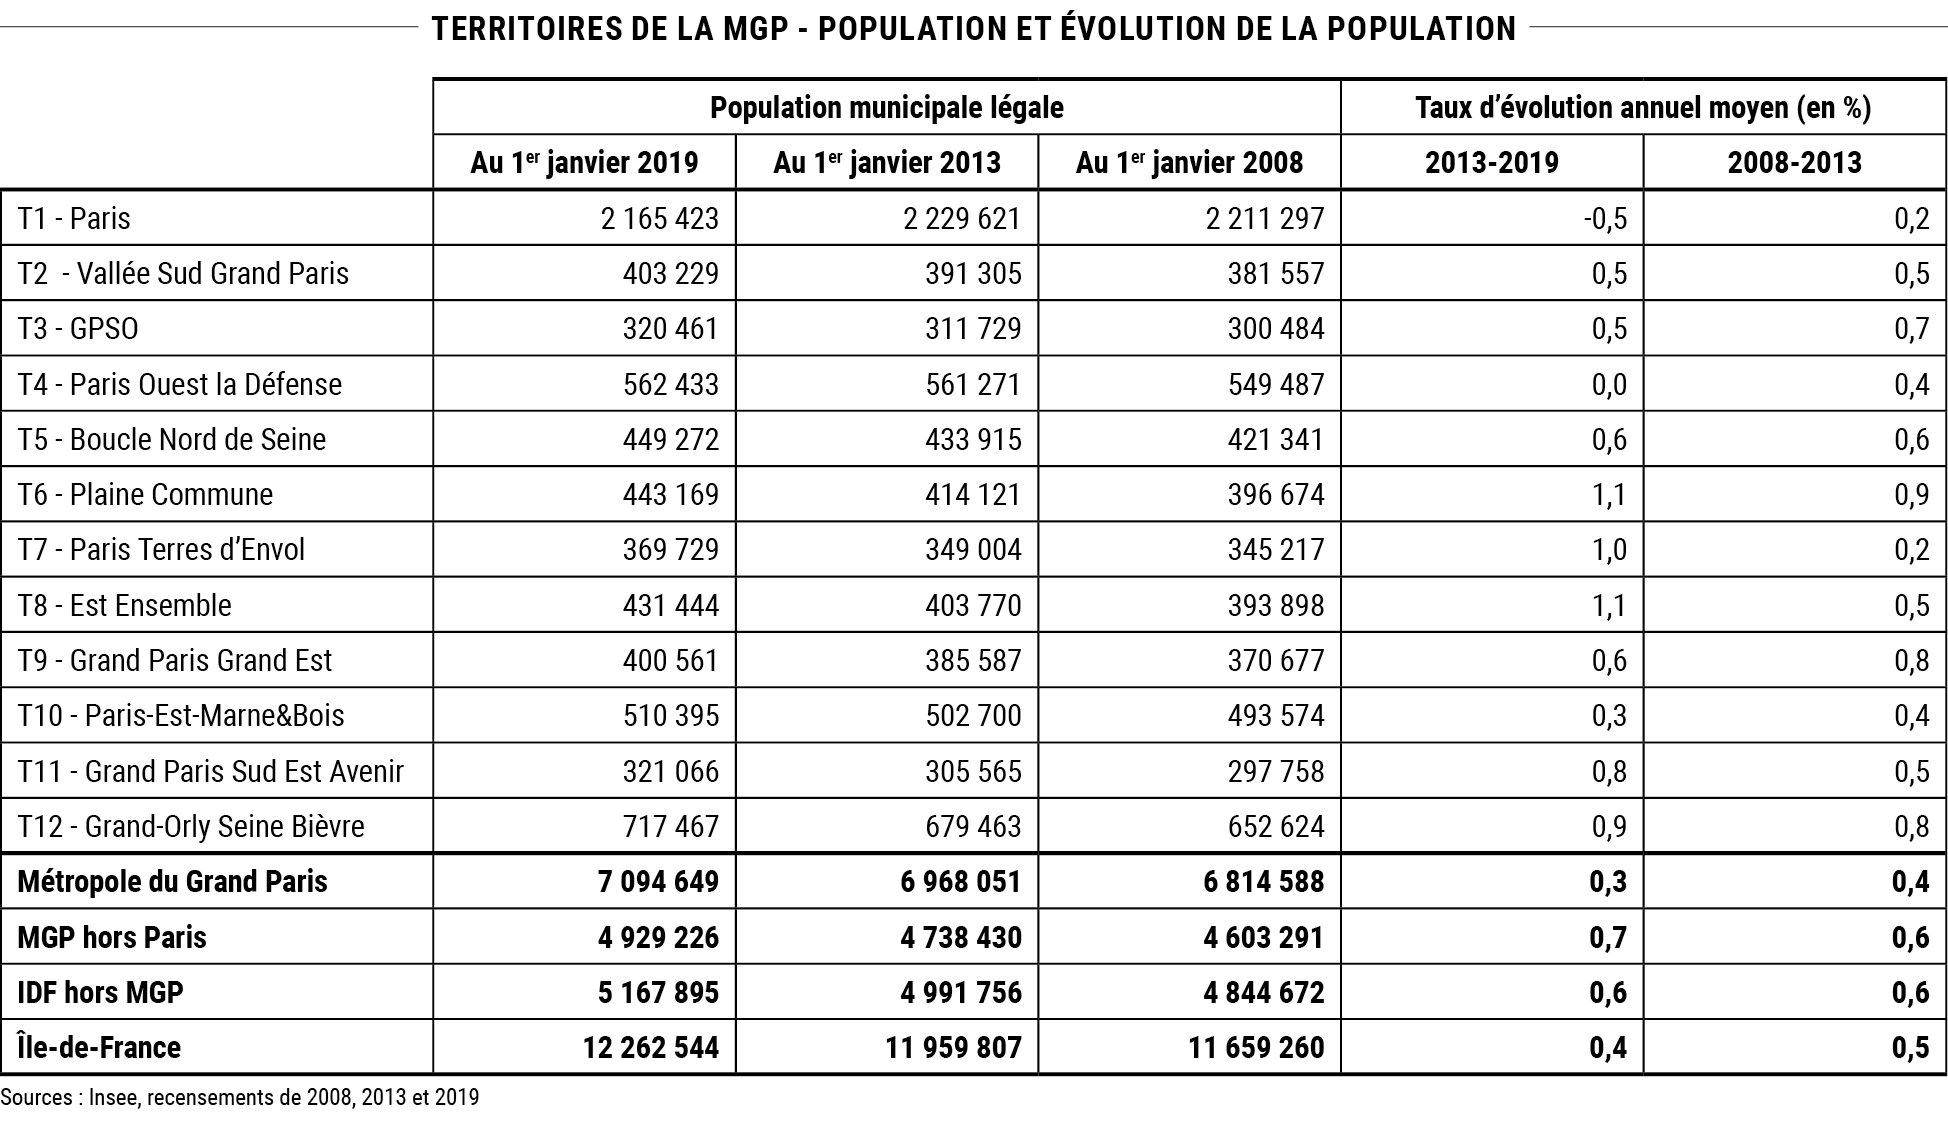 Territoires de la MGP - Population et évolution de la population © Apur - Sources : Insee, recensements de 2008, 2013 et 2019